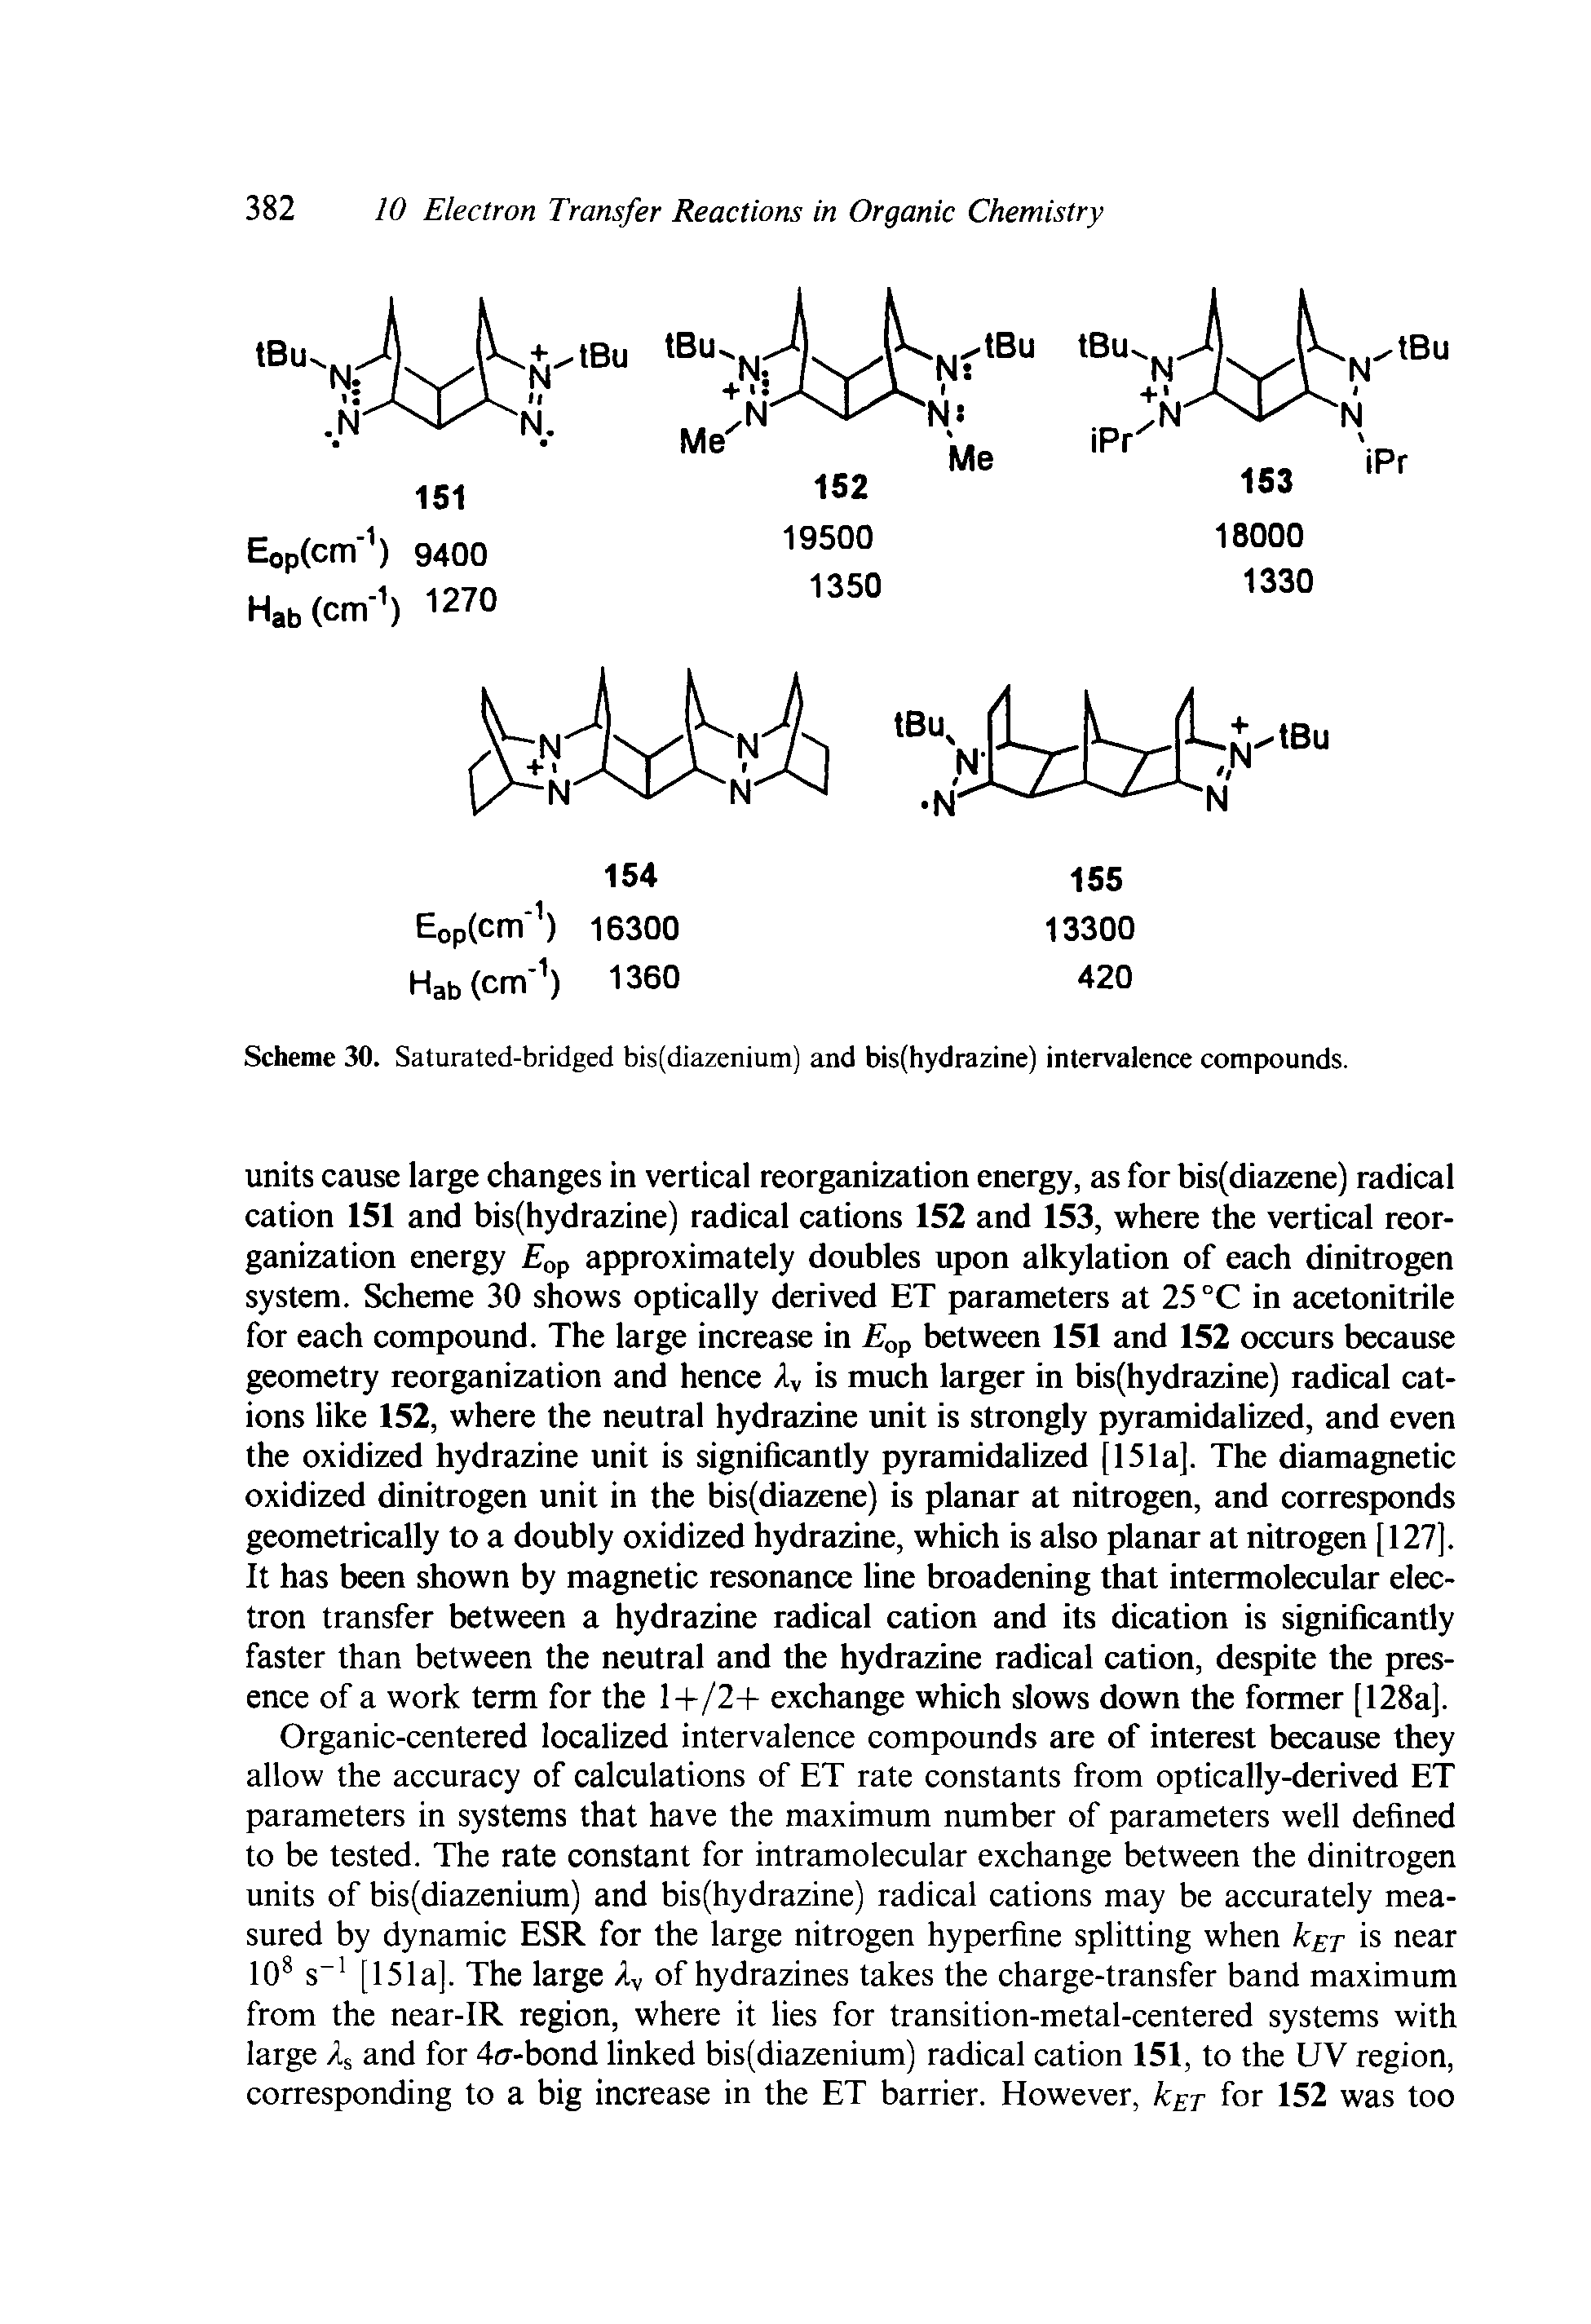 Scheme 30. Saturated-bridged bis(diazenium) and bis(hydrazine) intervalence compounds.